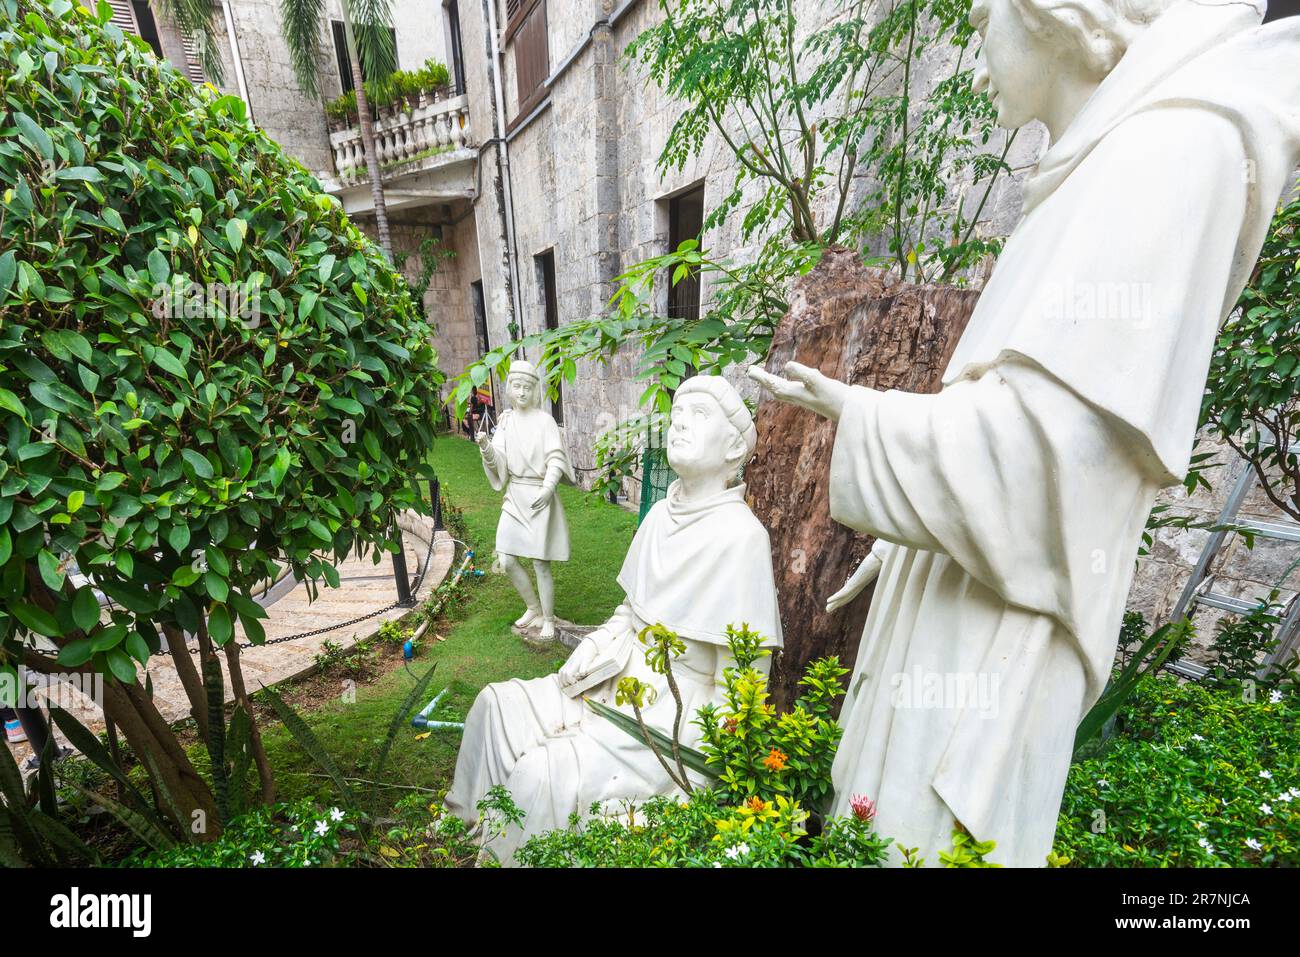 Statues blanches de saints, icônes catholiques historiques, et la figure d'un enfant, positionné comme si dans une conversation décontractée, parmi le feuillage bien gardé, les plantes et Banque D'Images